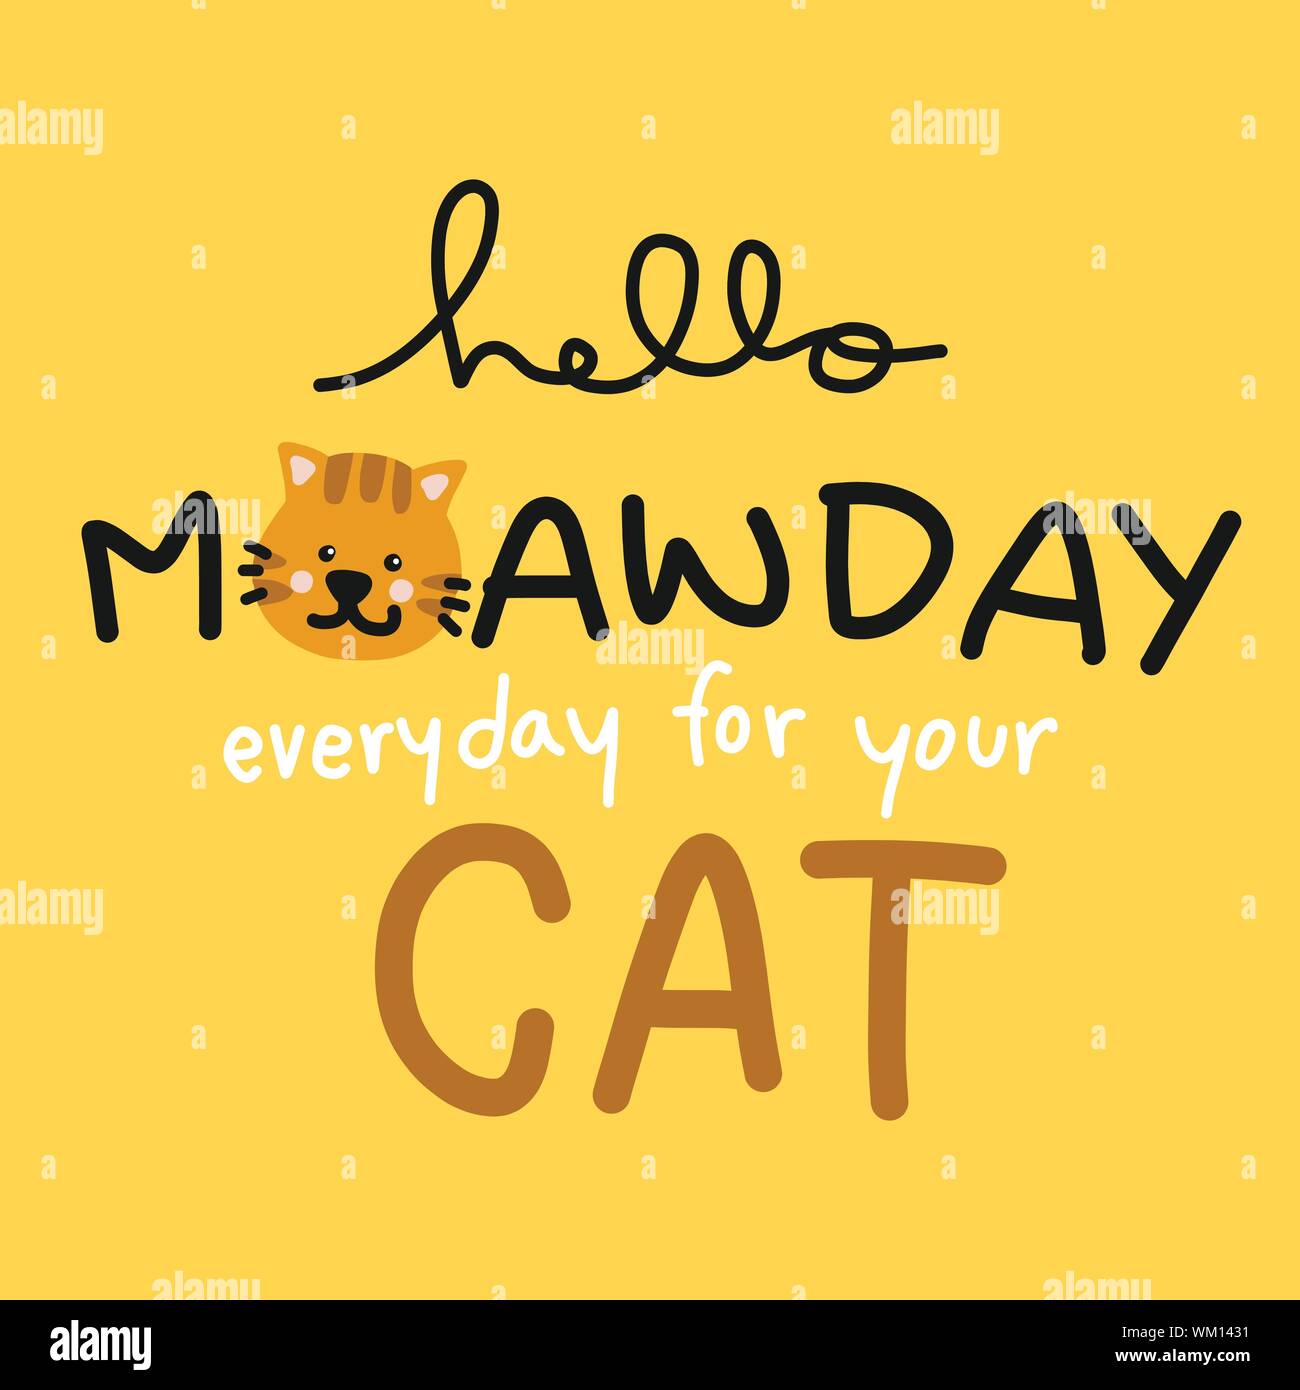 Meawday bonjour tous les jours pour votre chat cartoon vector illustration Illustration de Vecteur